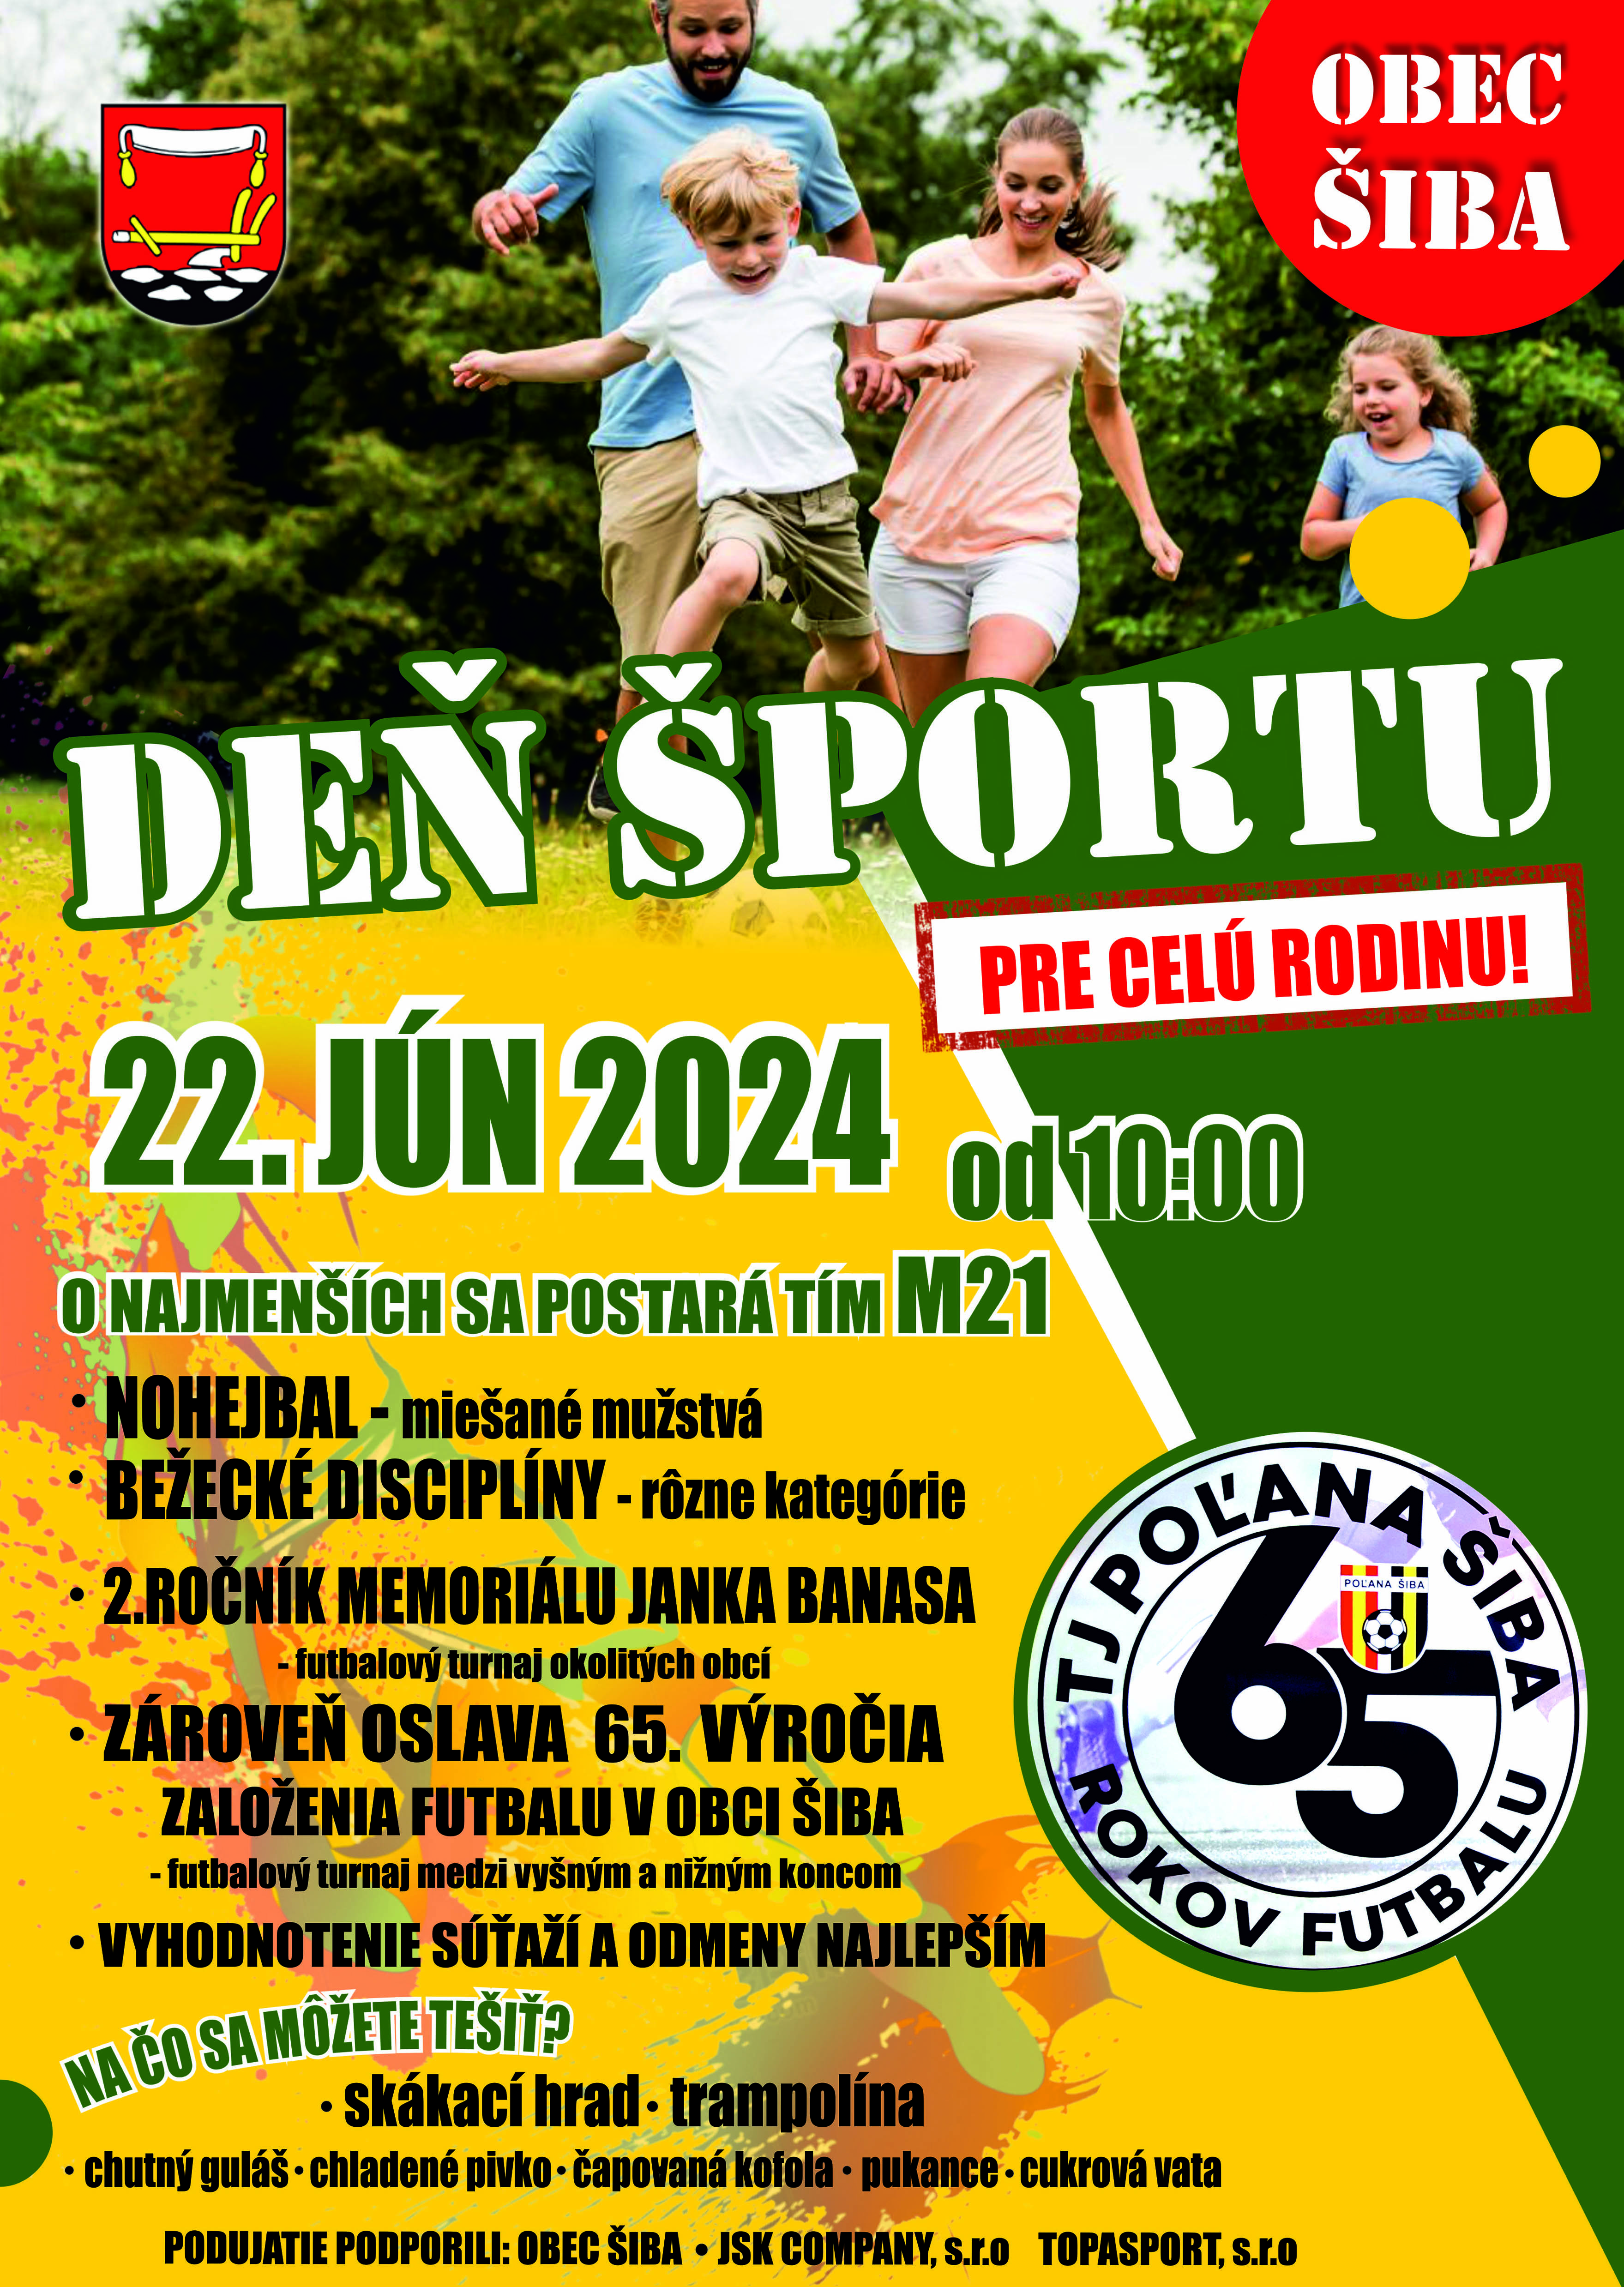 Deň športu pre celú rodinu v Obci Šiba - 22.06.2024